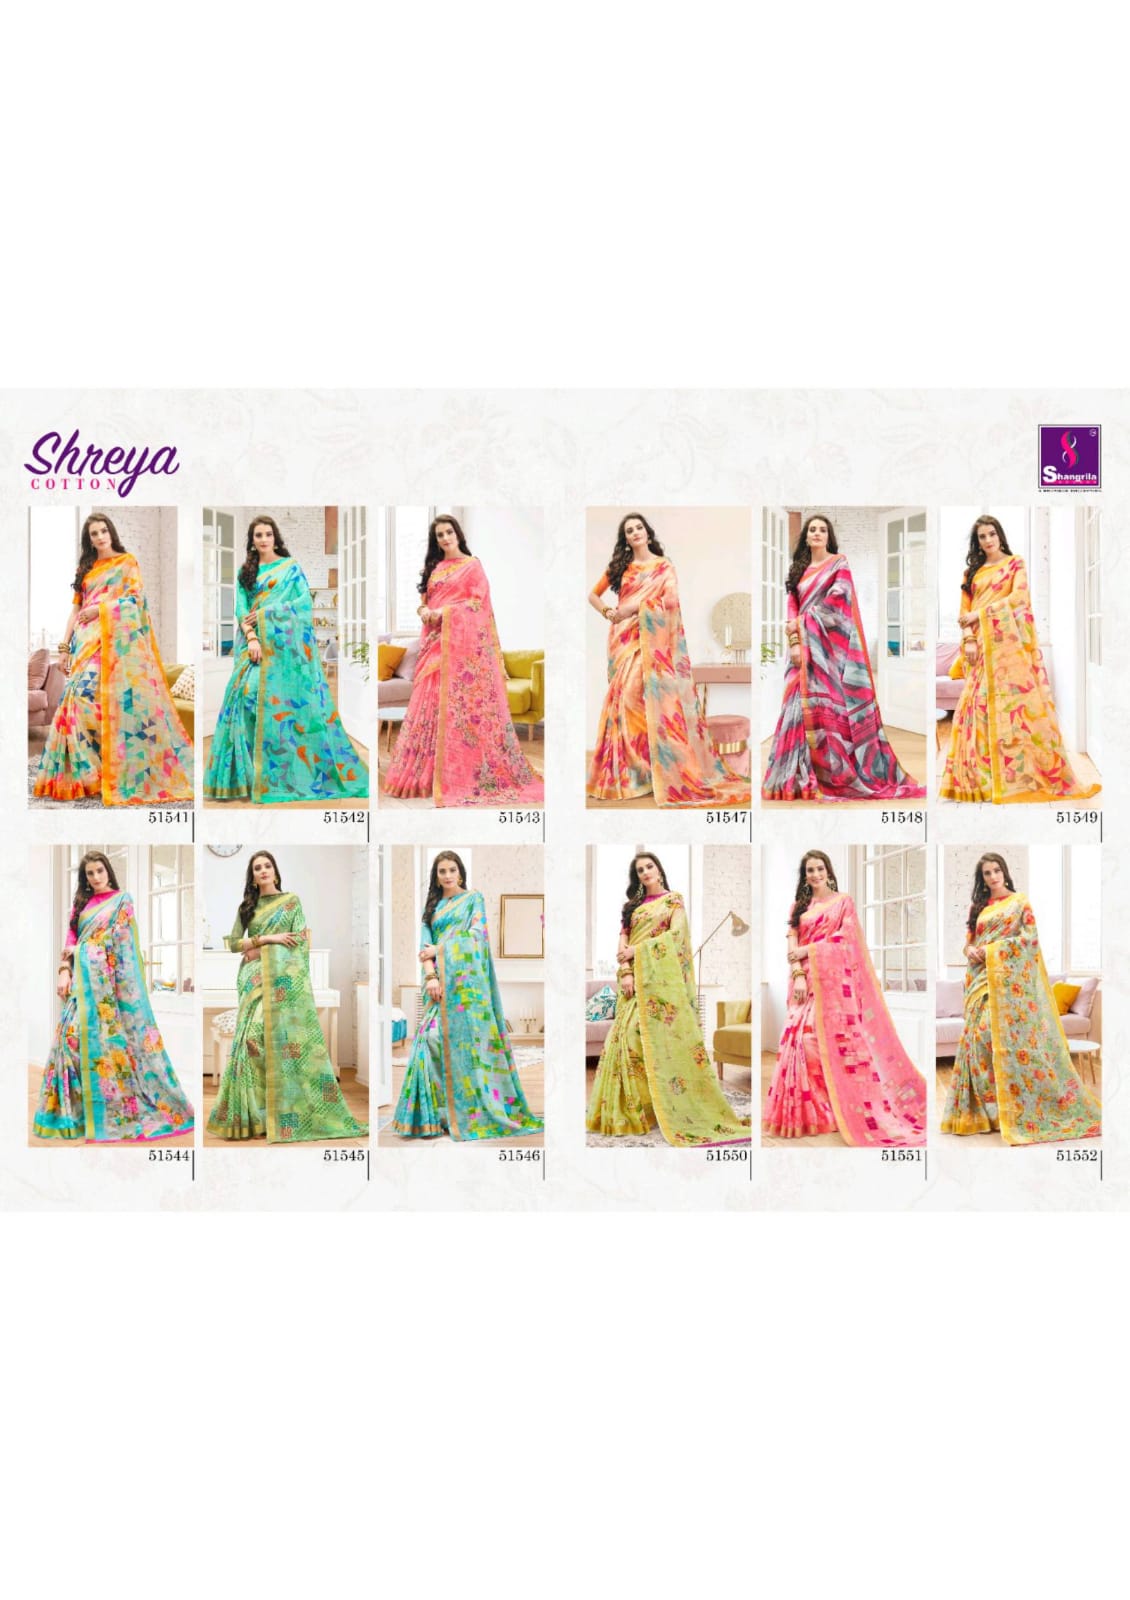 Shangrila Shreya Cotton 51541-51522